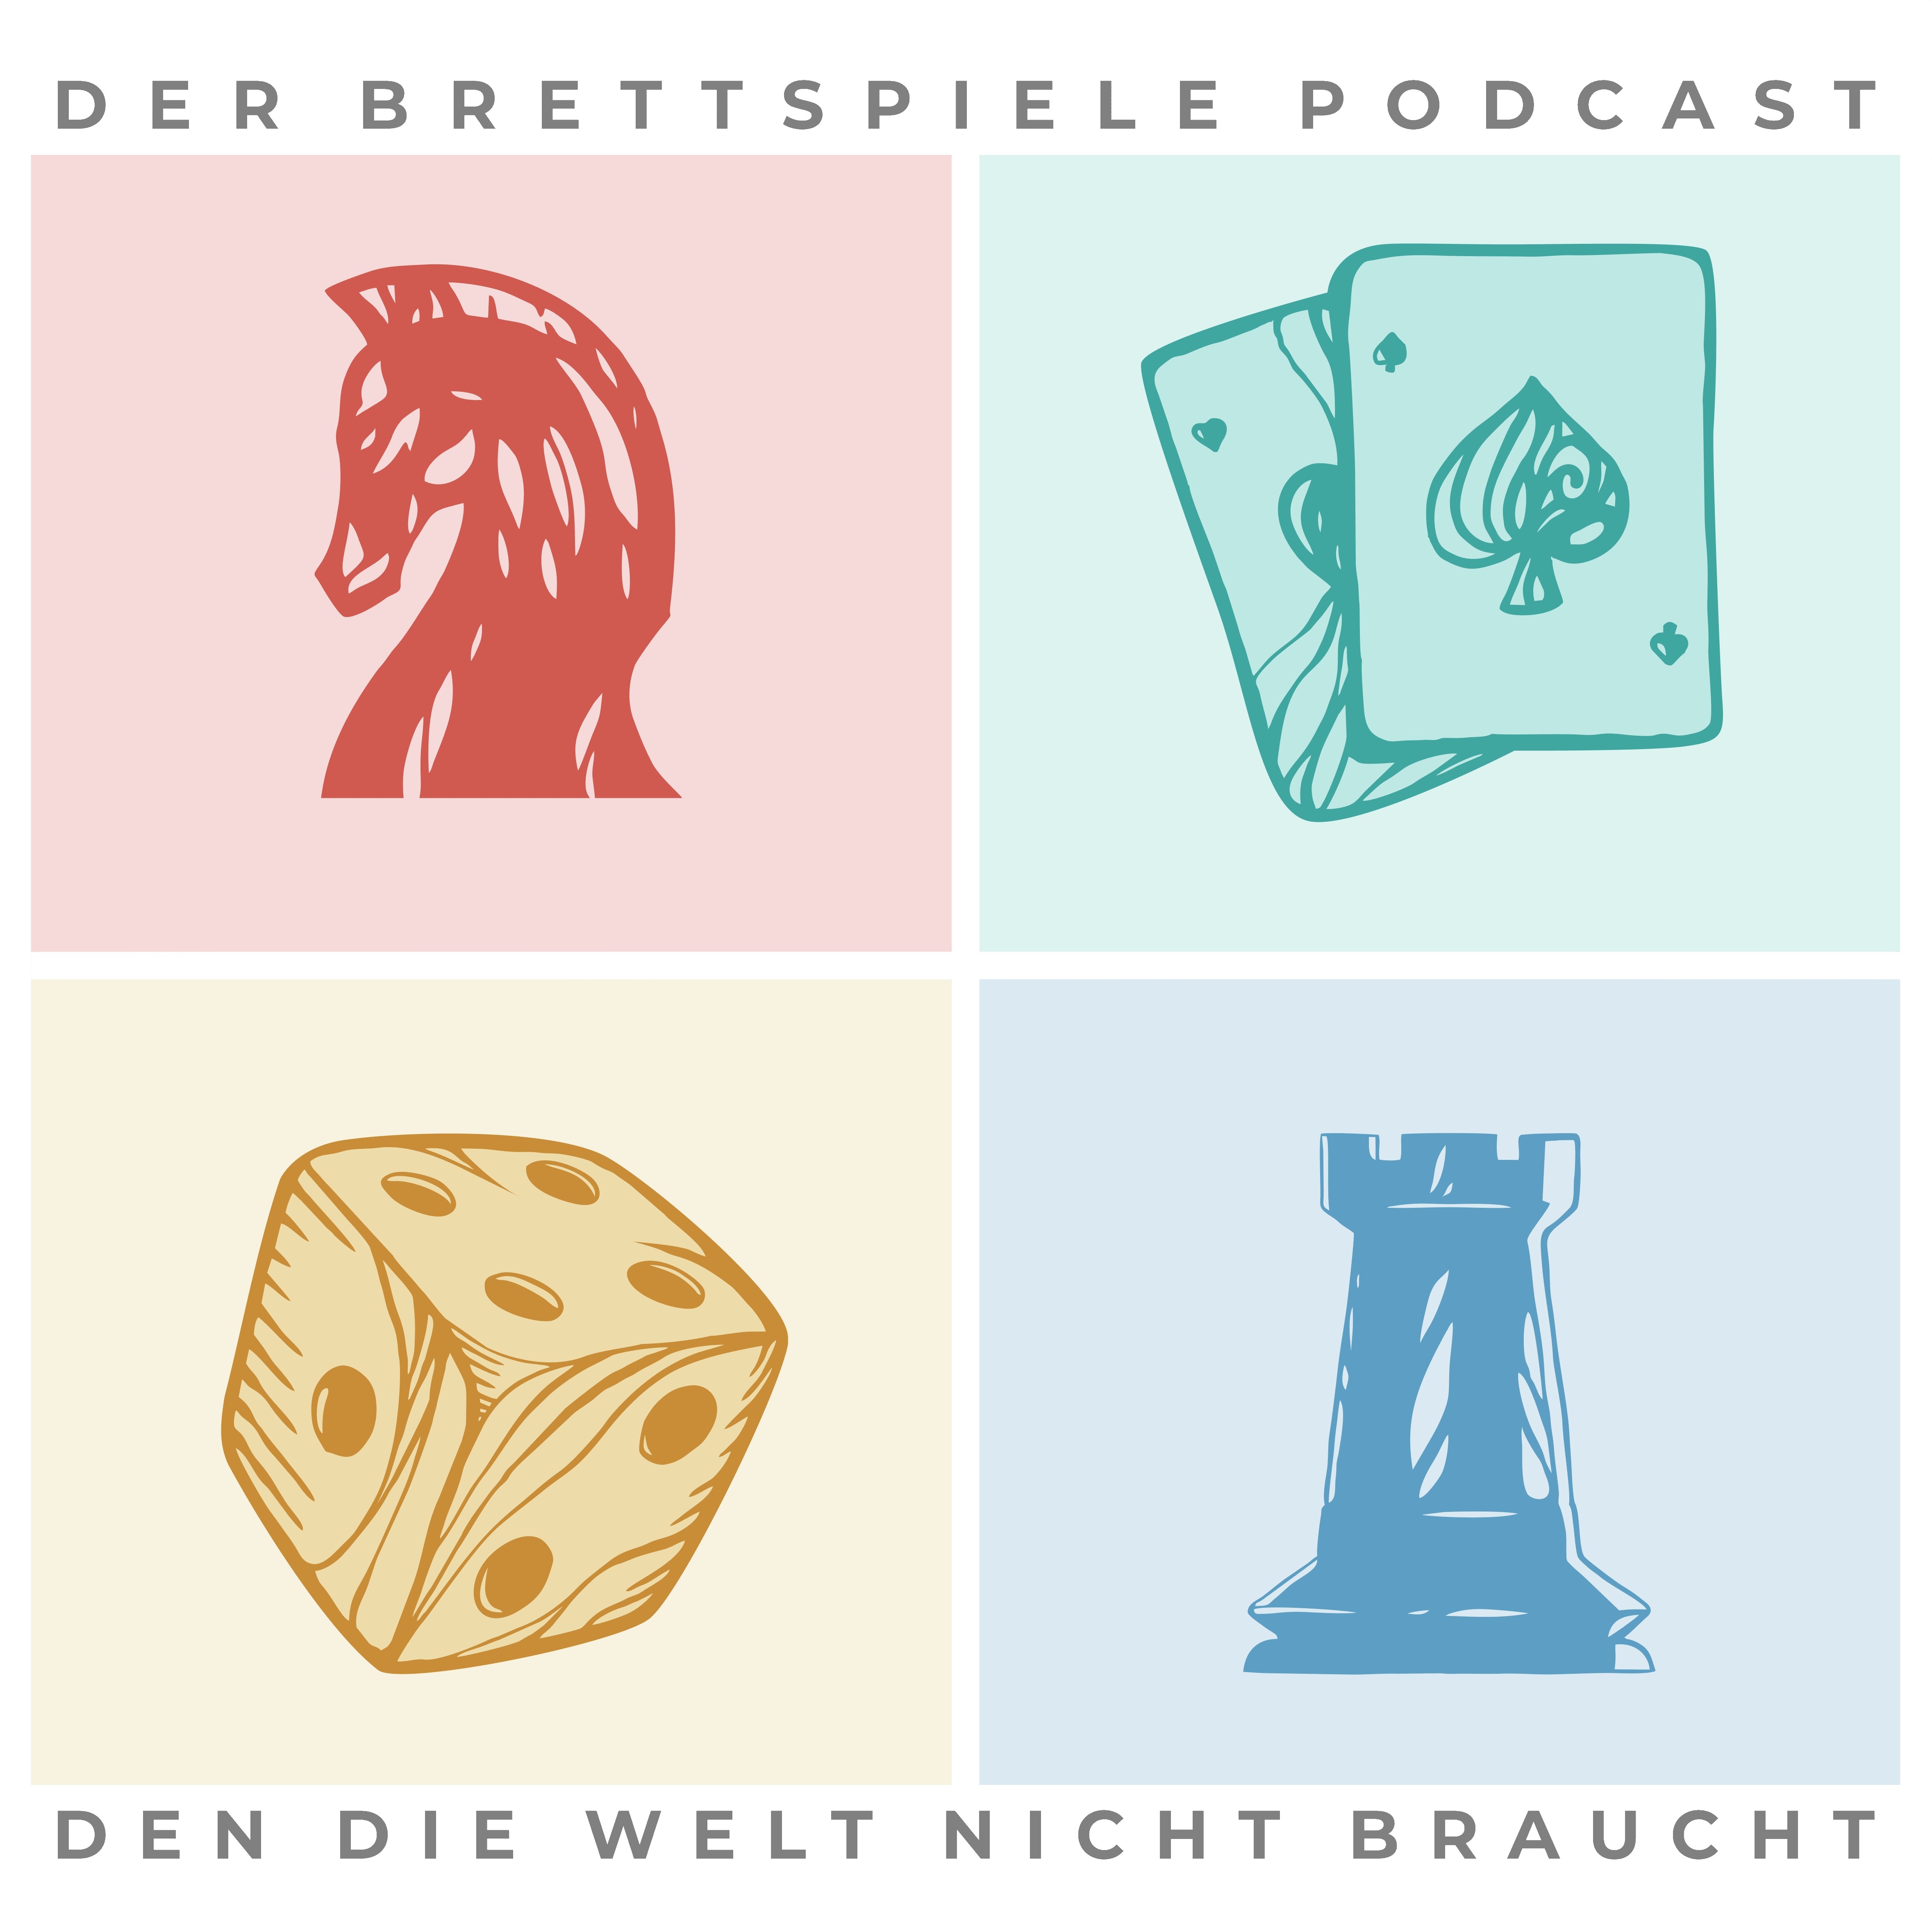 Der Brettspiele Podcast, den die Welt nicht braucht